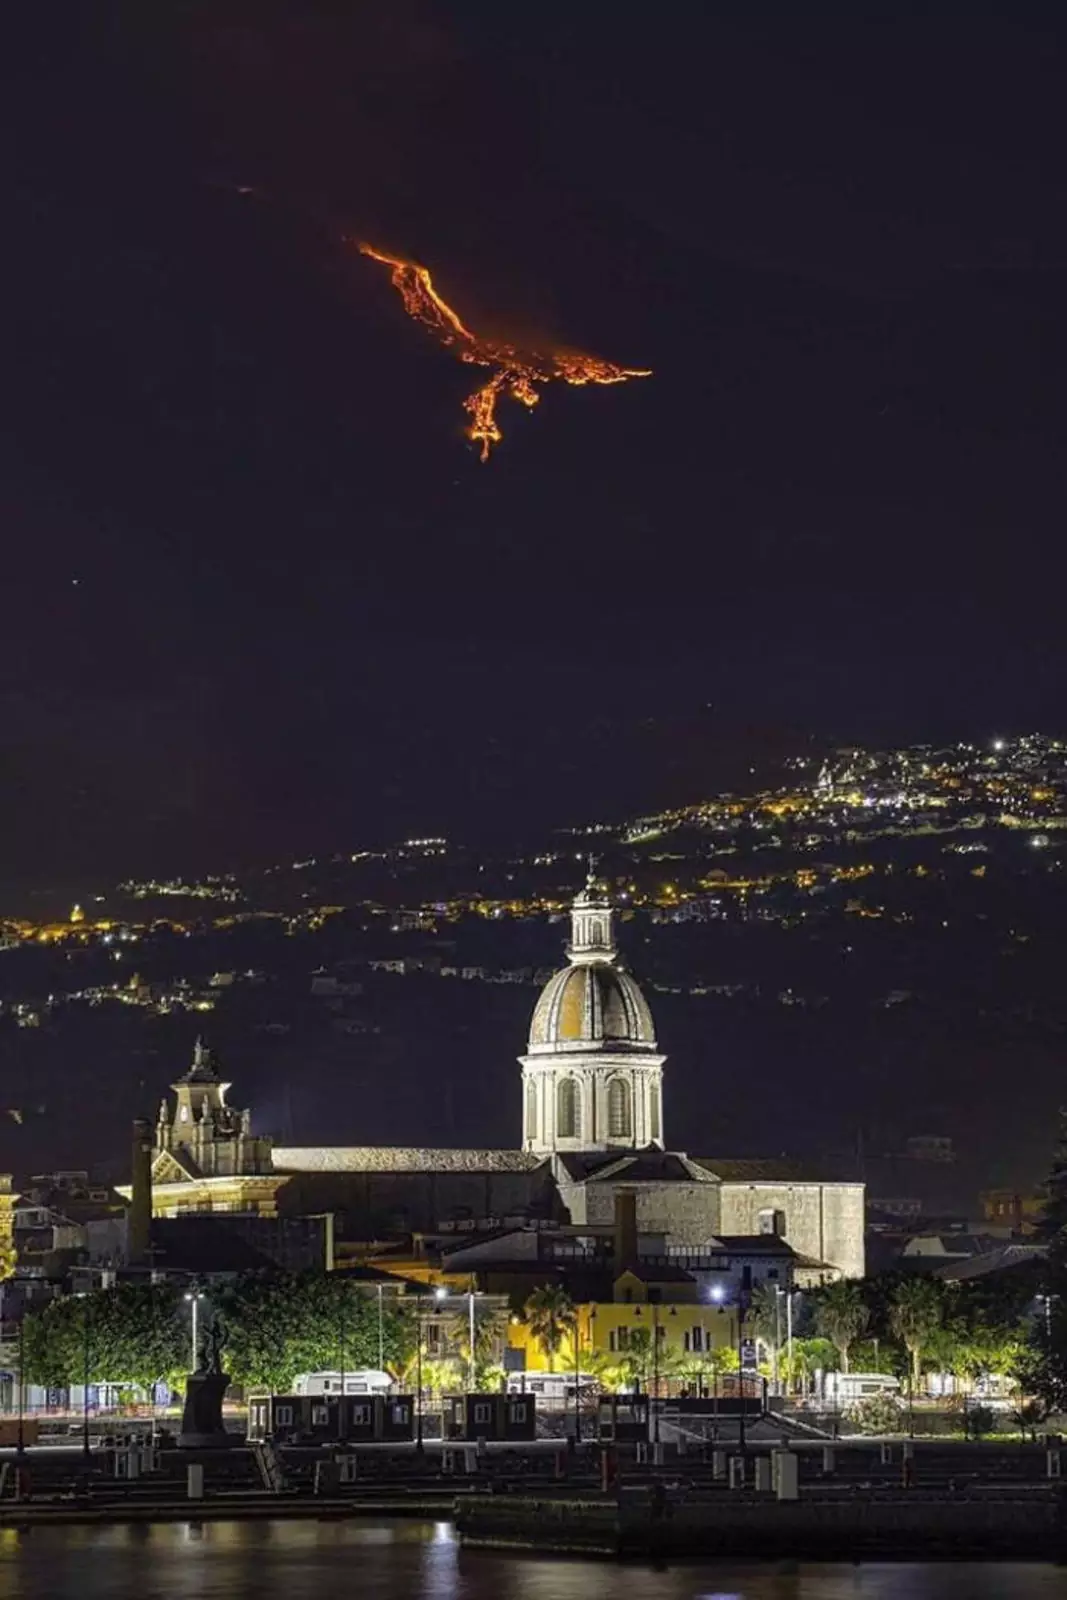 Извержение вулкана Этна, напоминающее на фото феникса.